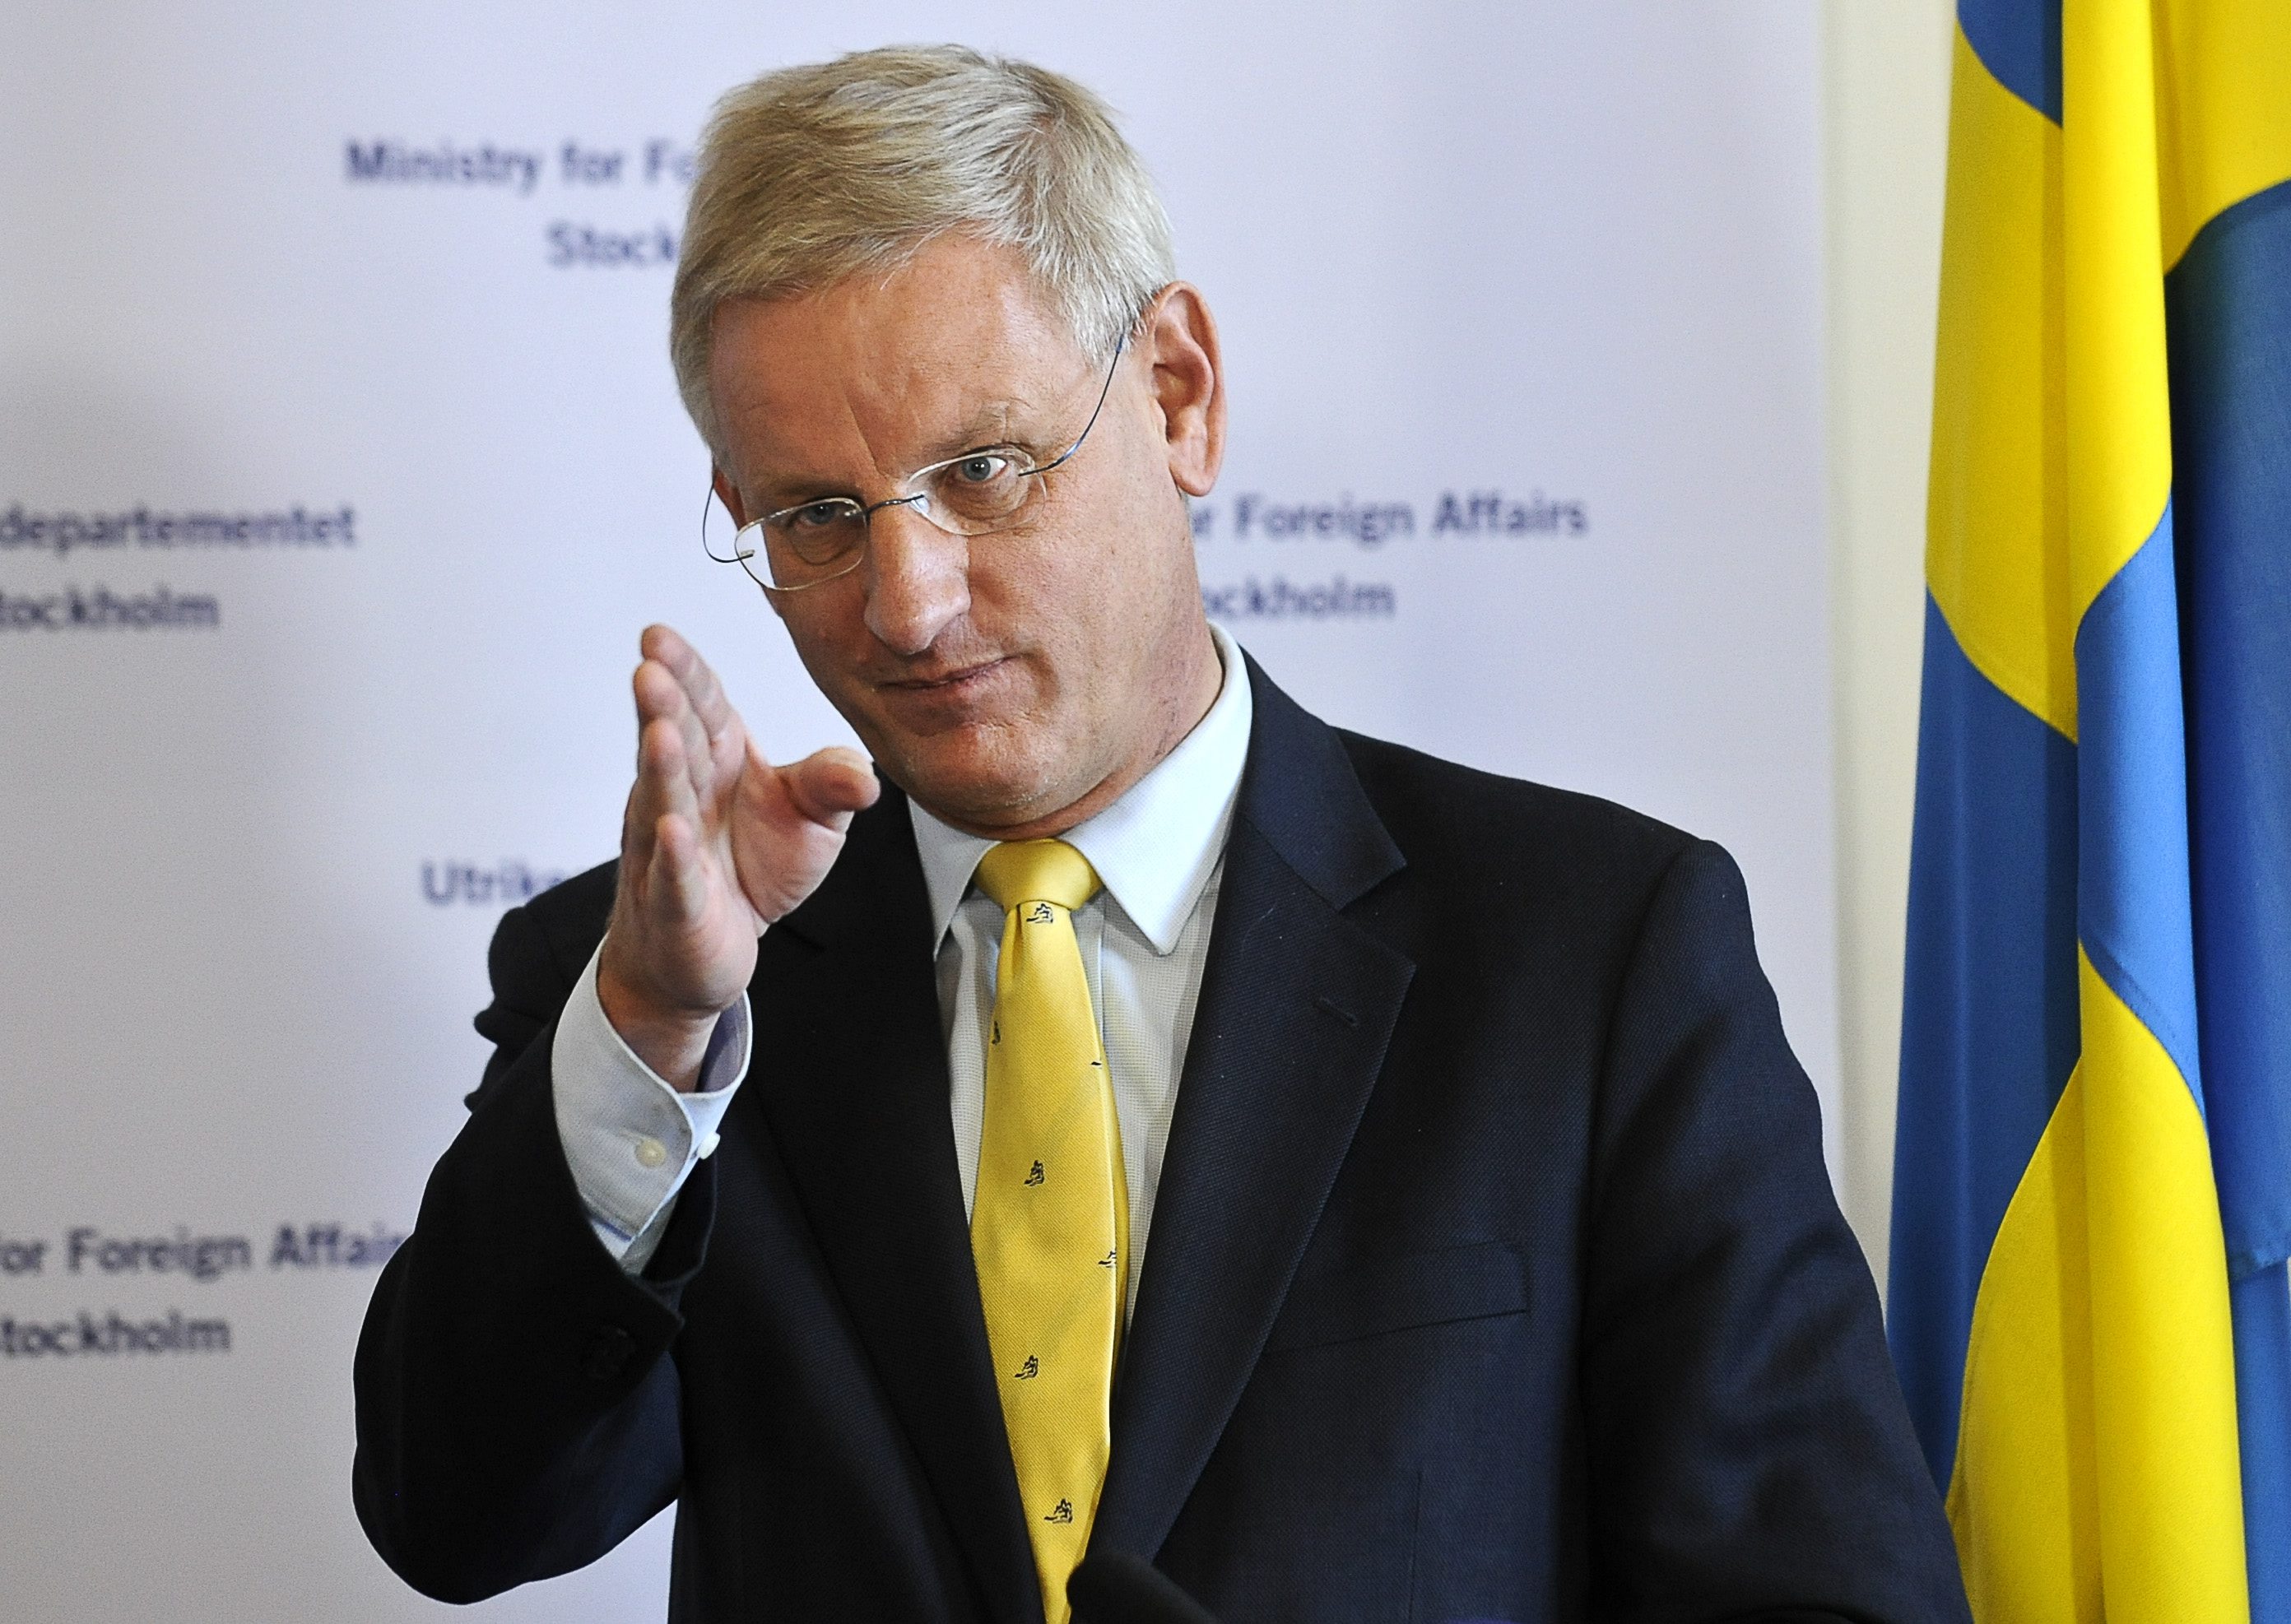 Förutom Tolgfors har Utrikesminister Carl Bildt varit i fokus när han igonerarde Jan Eliassons erbjudande om att hjälpa svenska regeringen med att få hem de svenska journalisterna Johan Persson och Martin Schibbye.